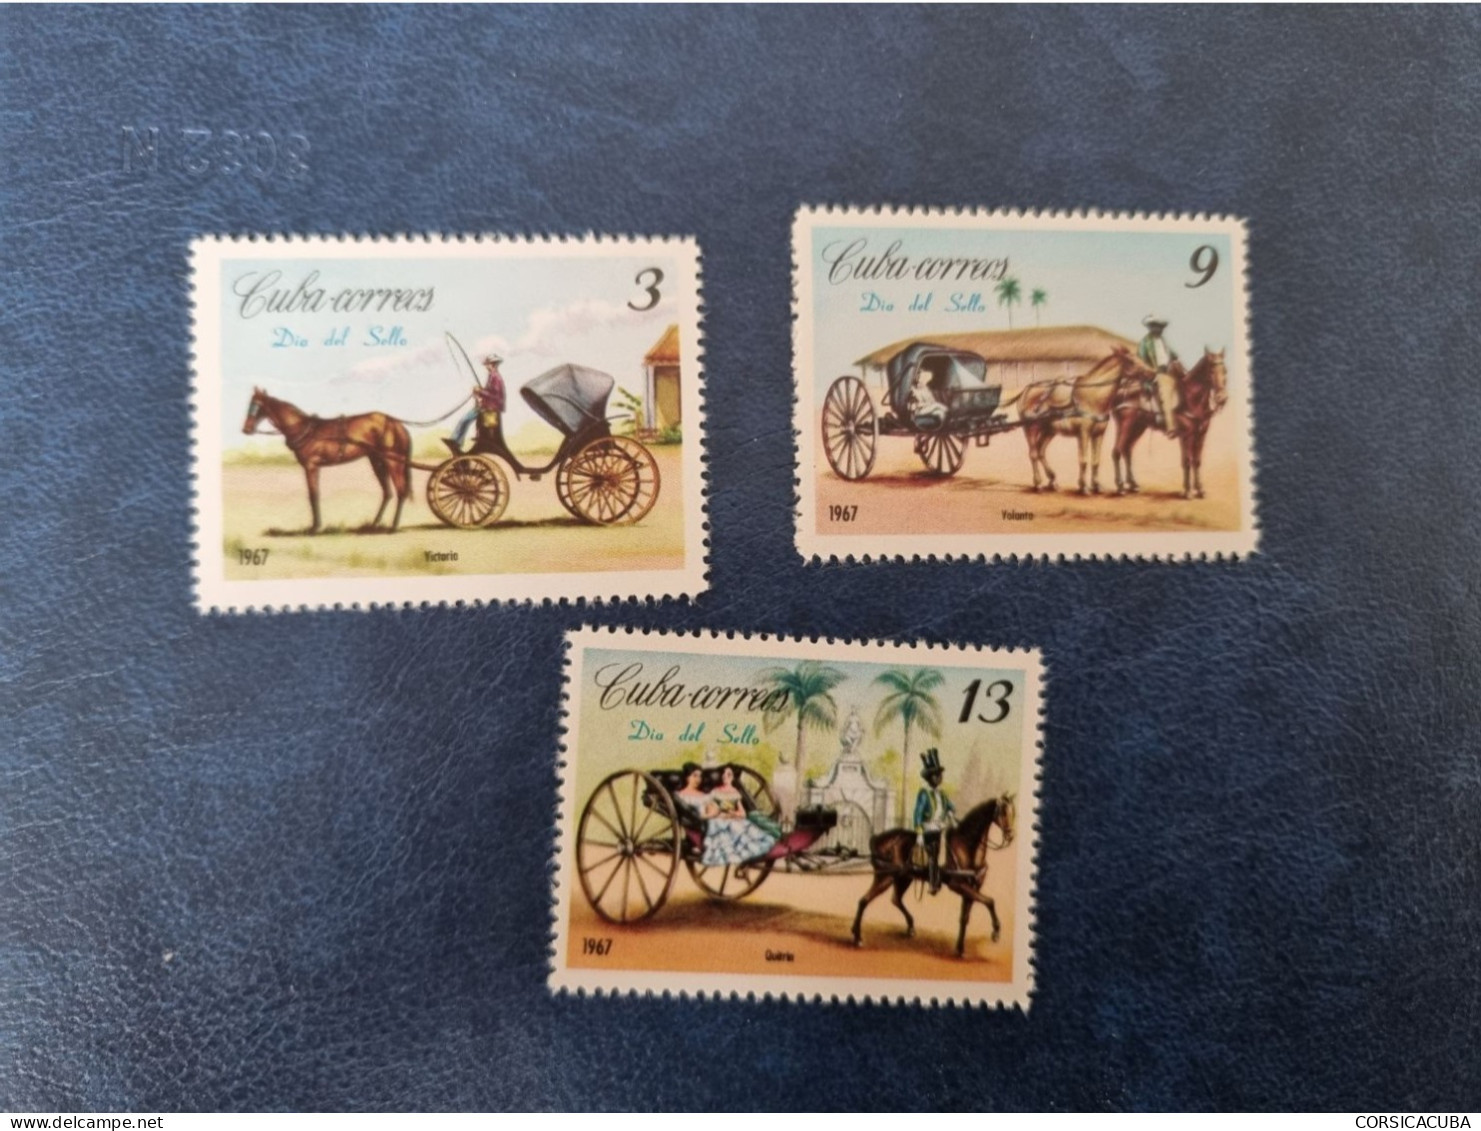 CUBA  NEUF  1967    DIA  DEL  SELLO //  PARFAIT  ETAT  //  1er  CHOIX  // - Unused Stamps